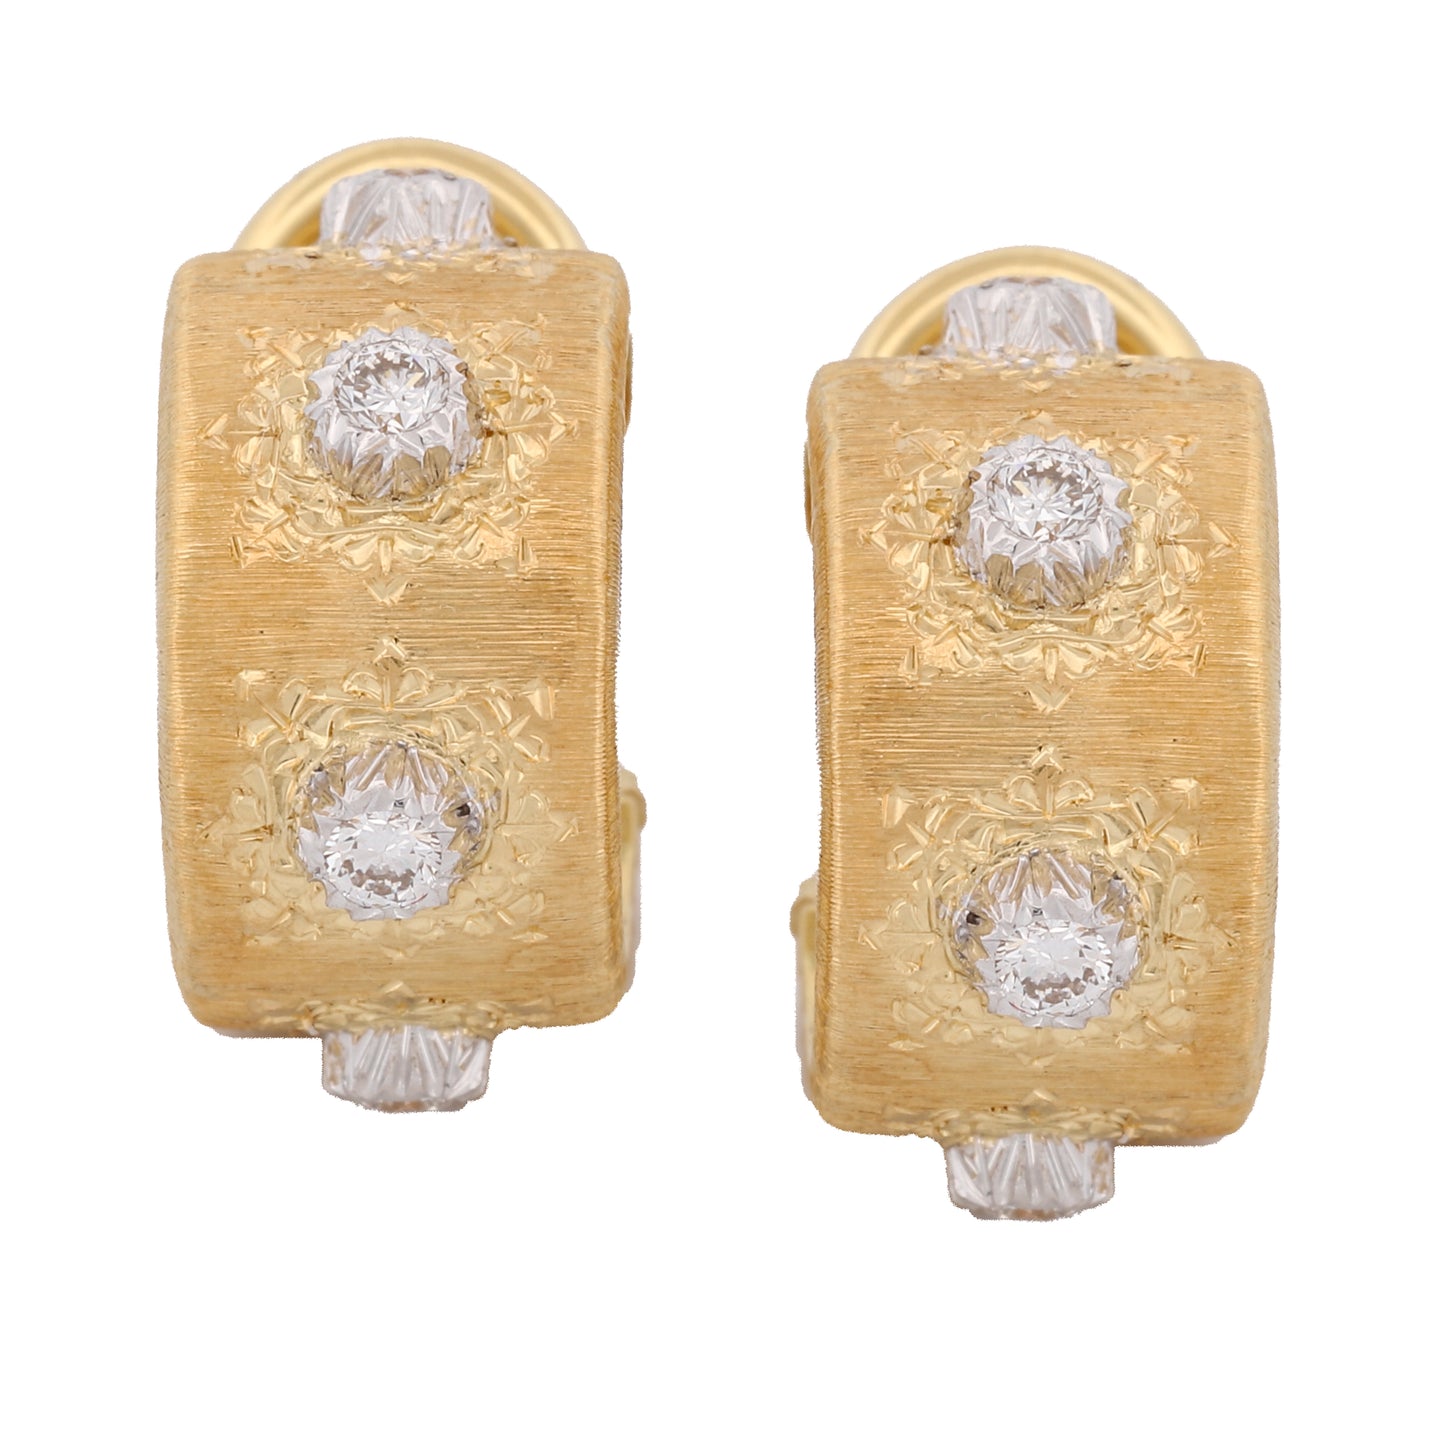 Buccellati Macri Classica 4-Diamond Small Hoop Earrings in 18k Yellow Gold